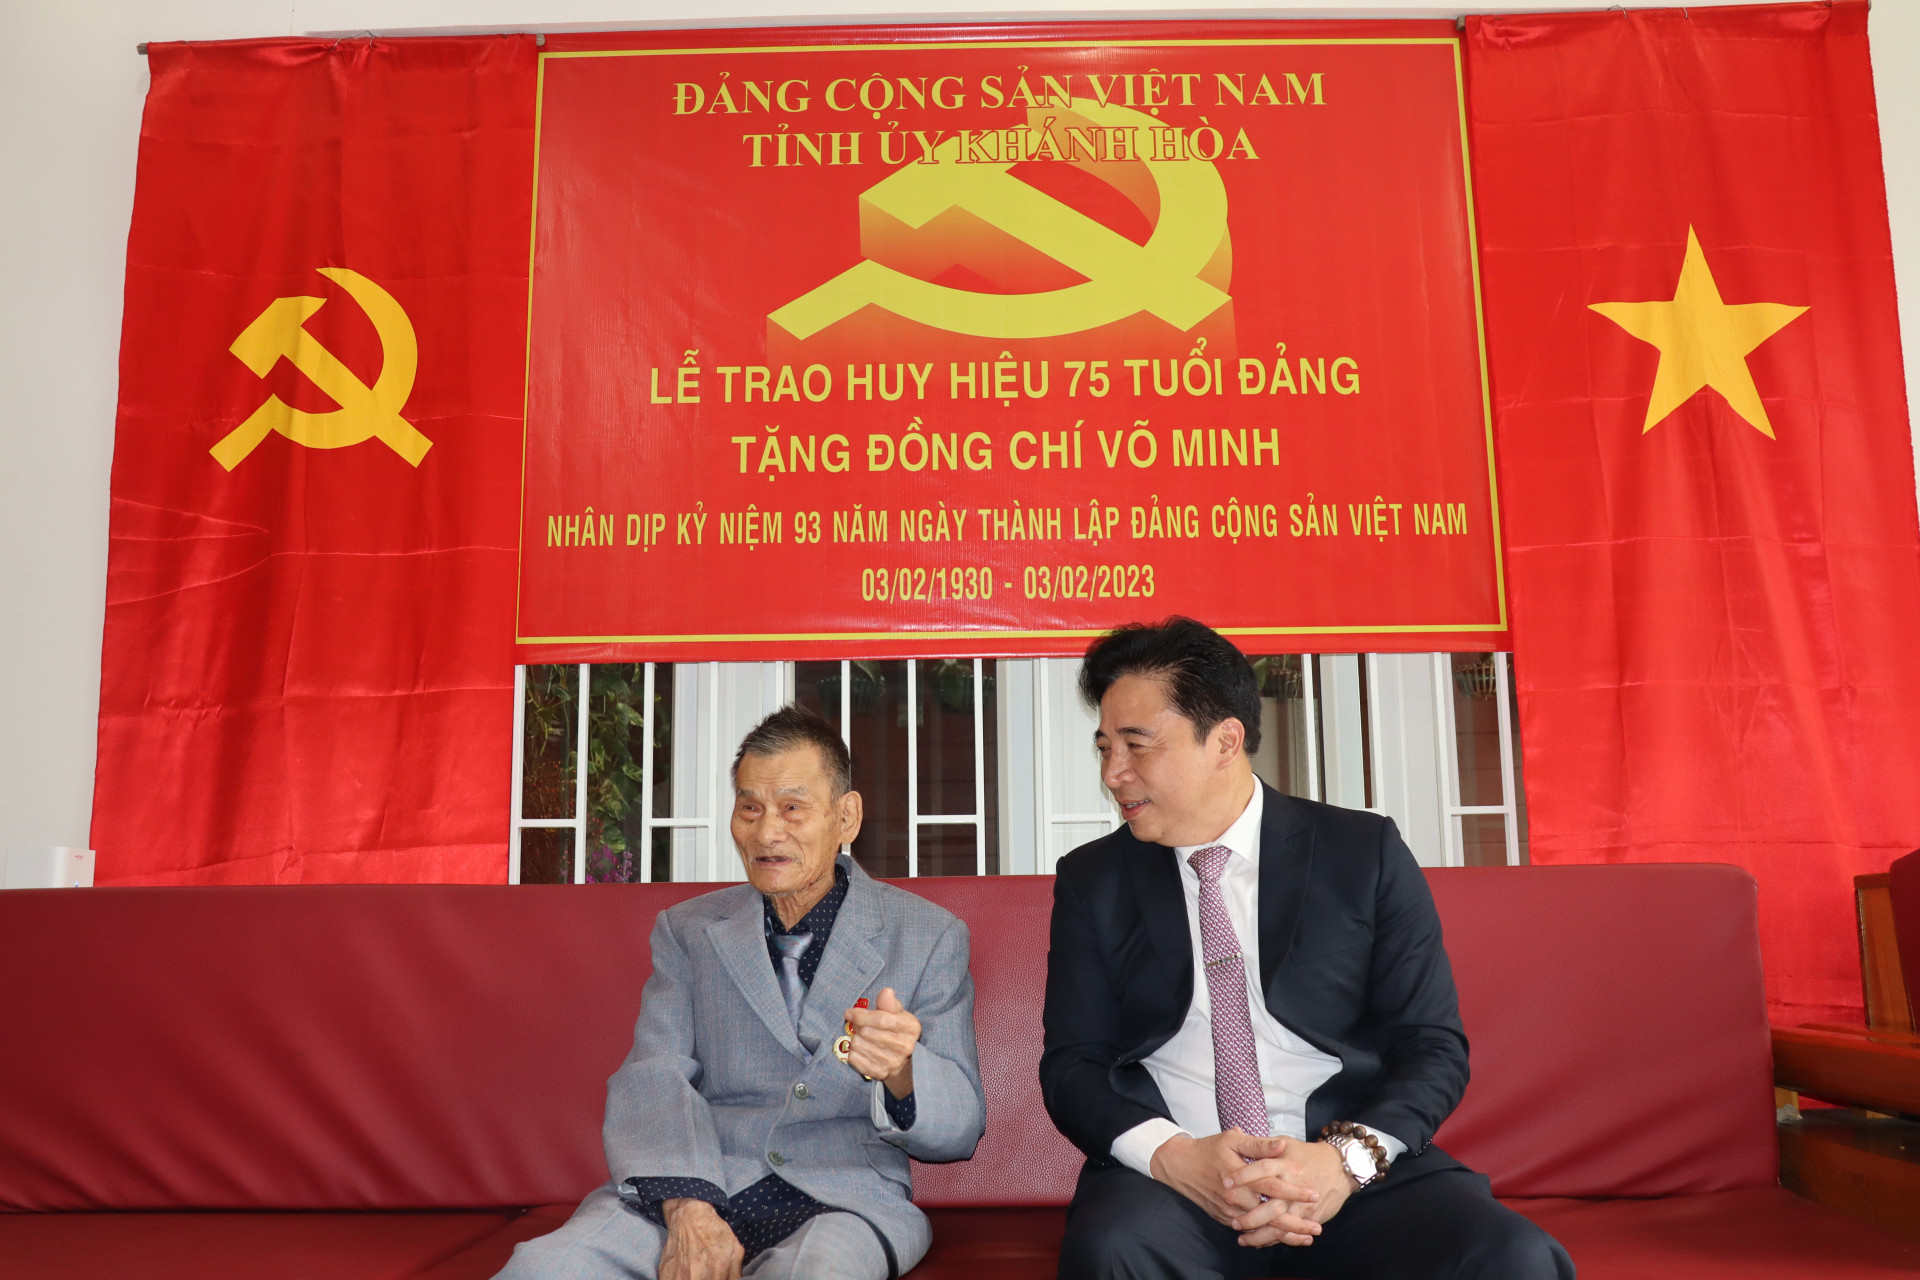 Đồng chí Nguyễn Khắc Toàn trò chuyện cùng đồng chí Võ Minh 